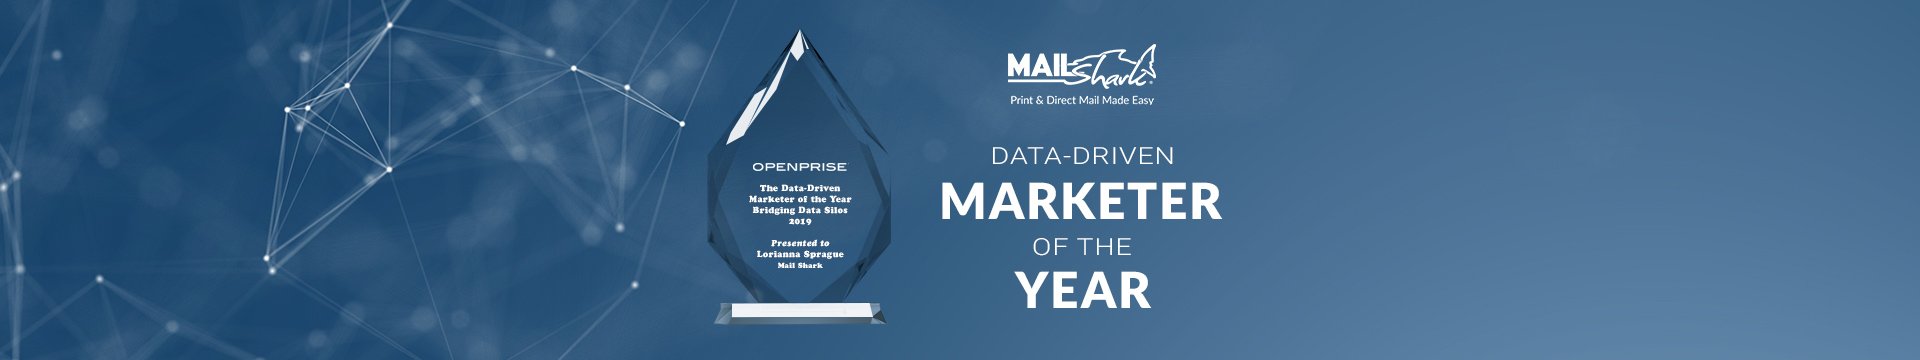 Mail Shark Team Members Win Openprise Marketing Award